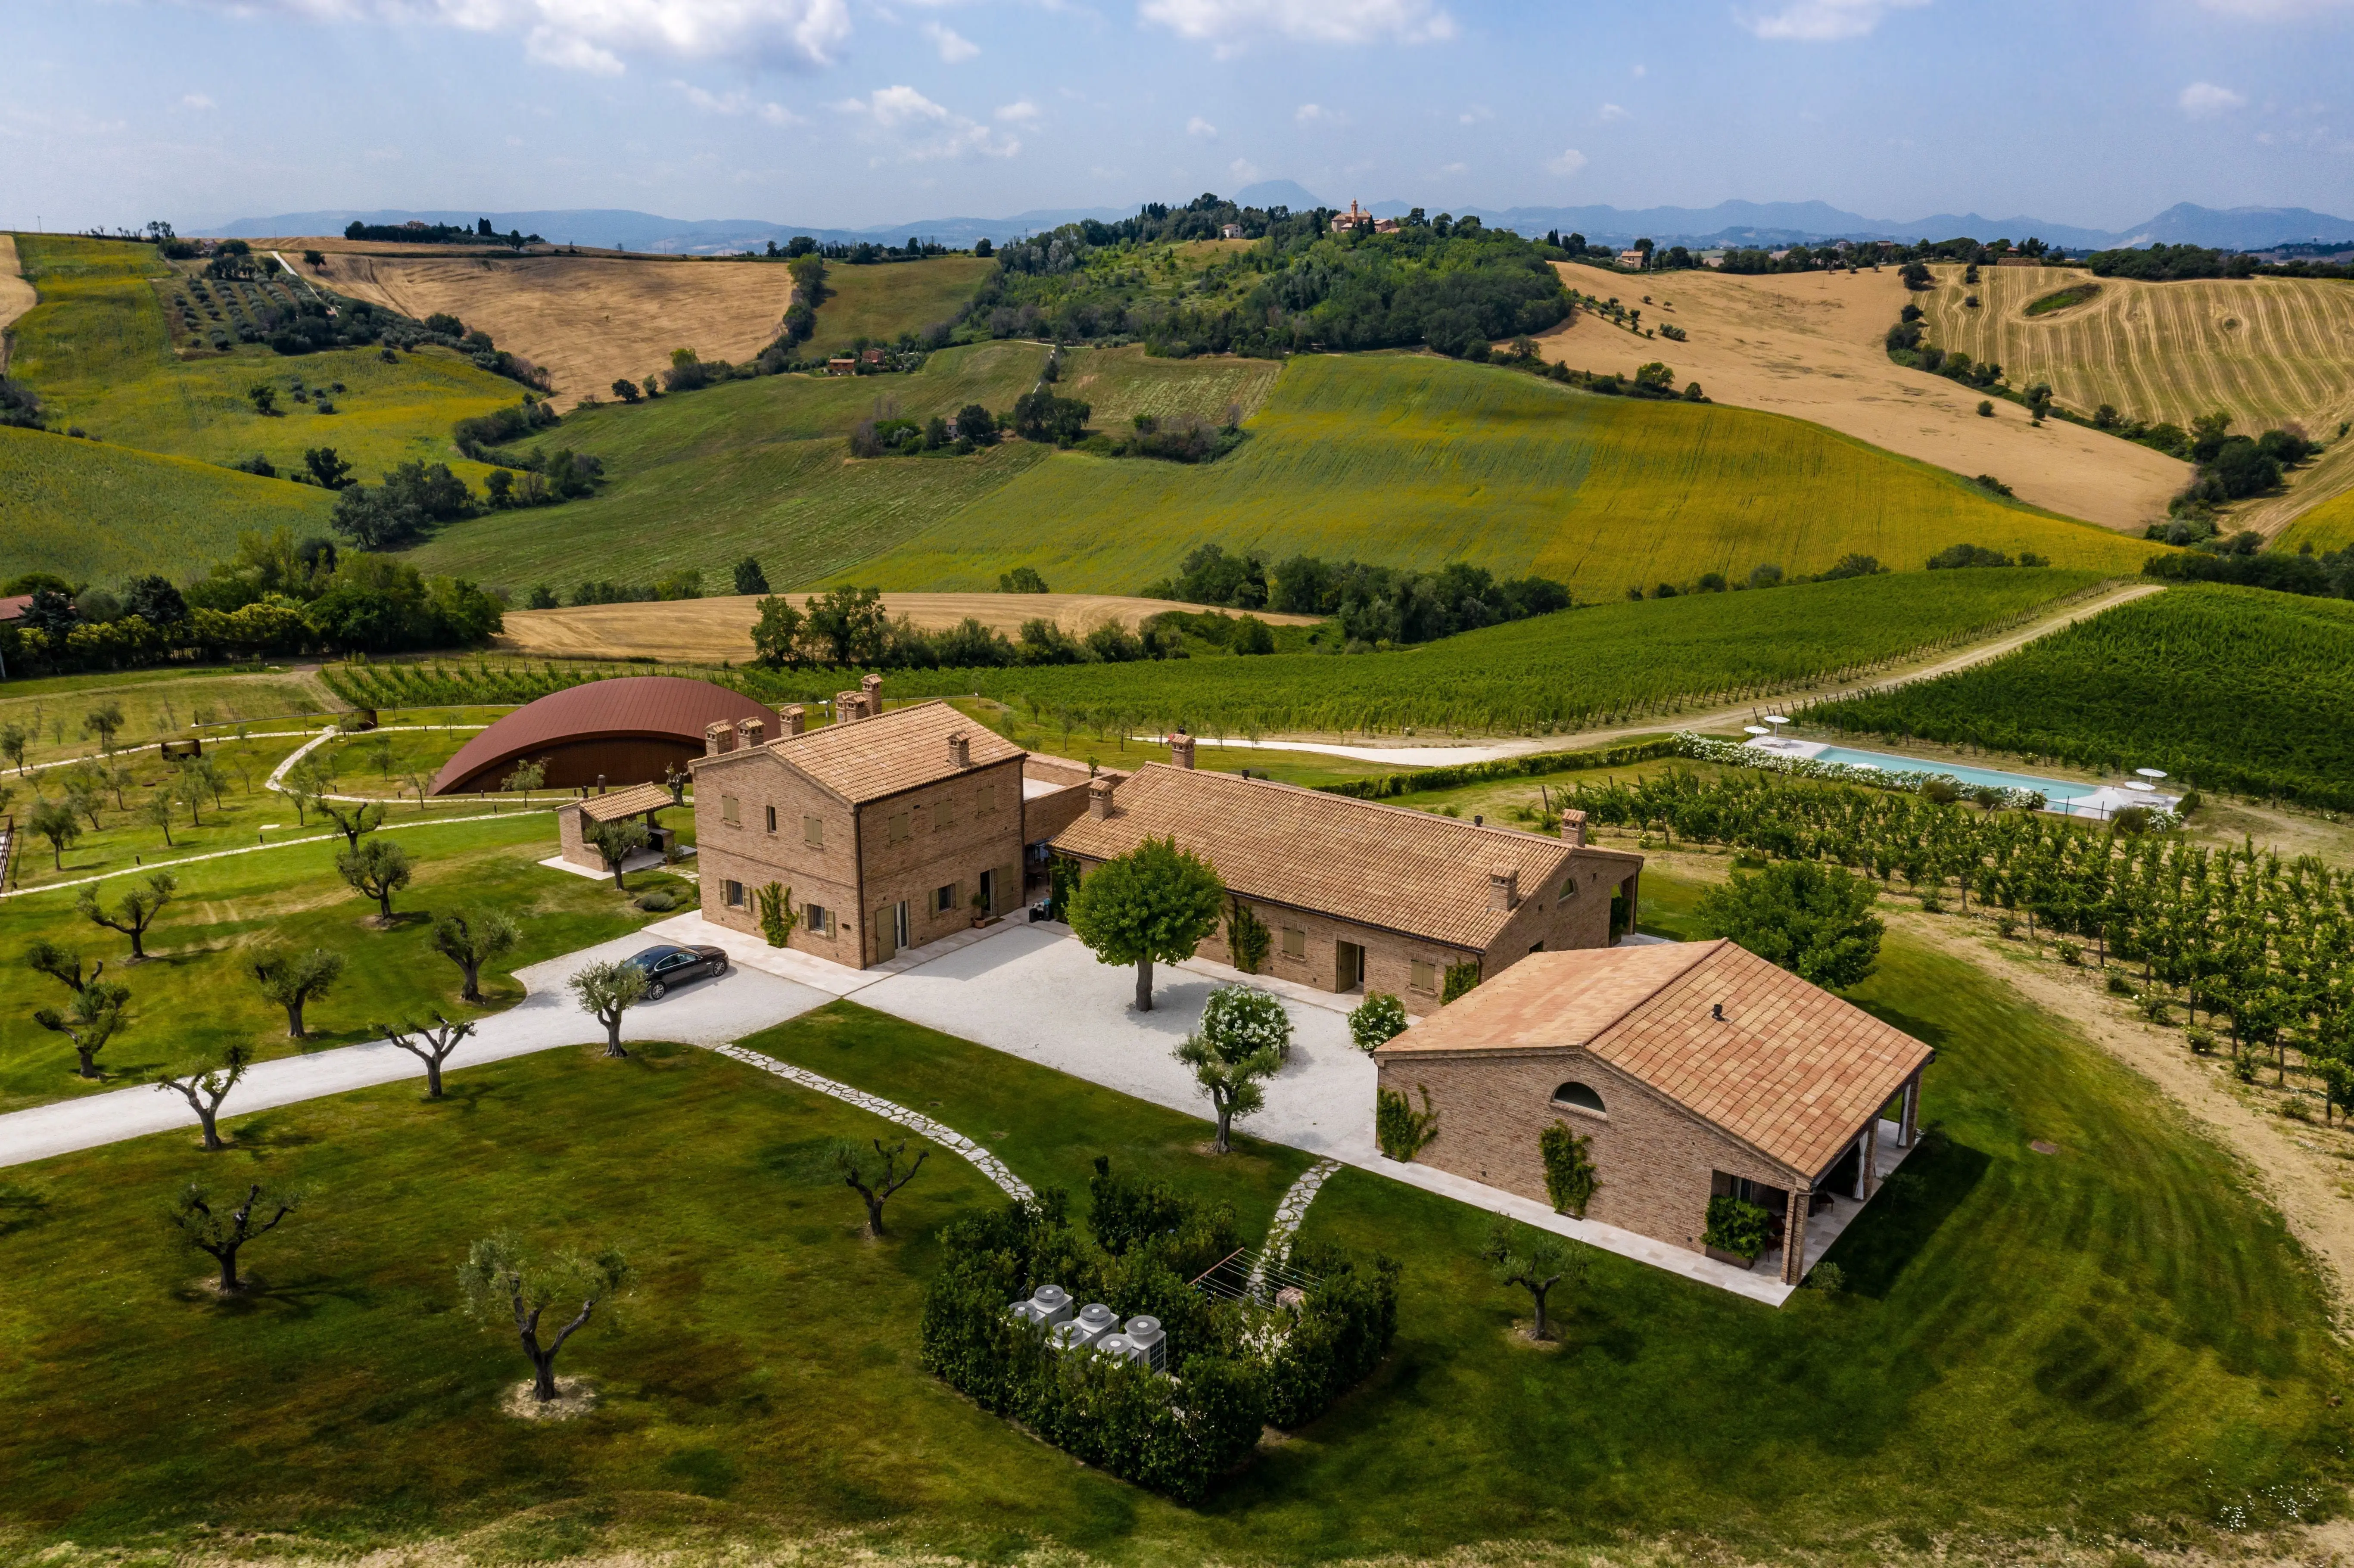 Nest Italy - Wine & Spa Retreat in the Marche